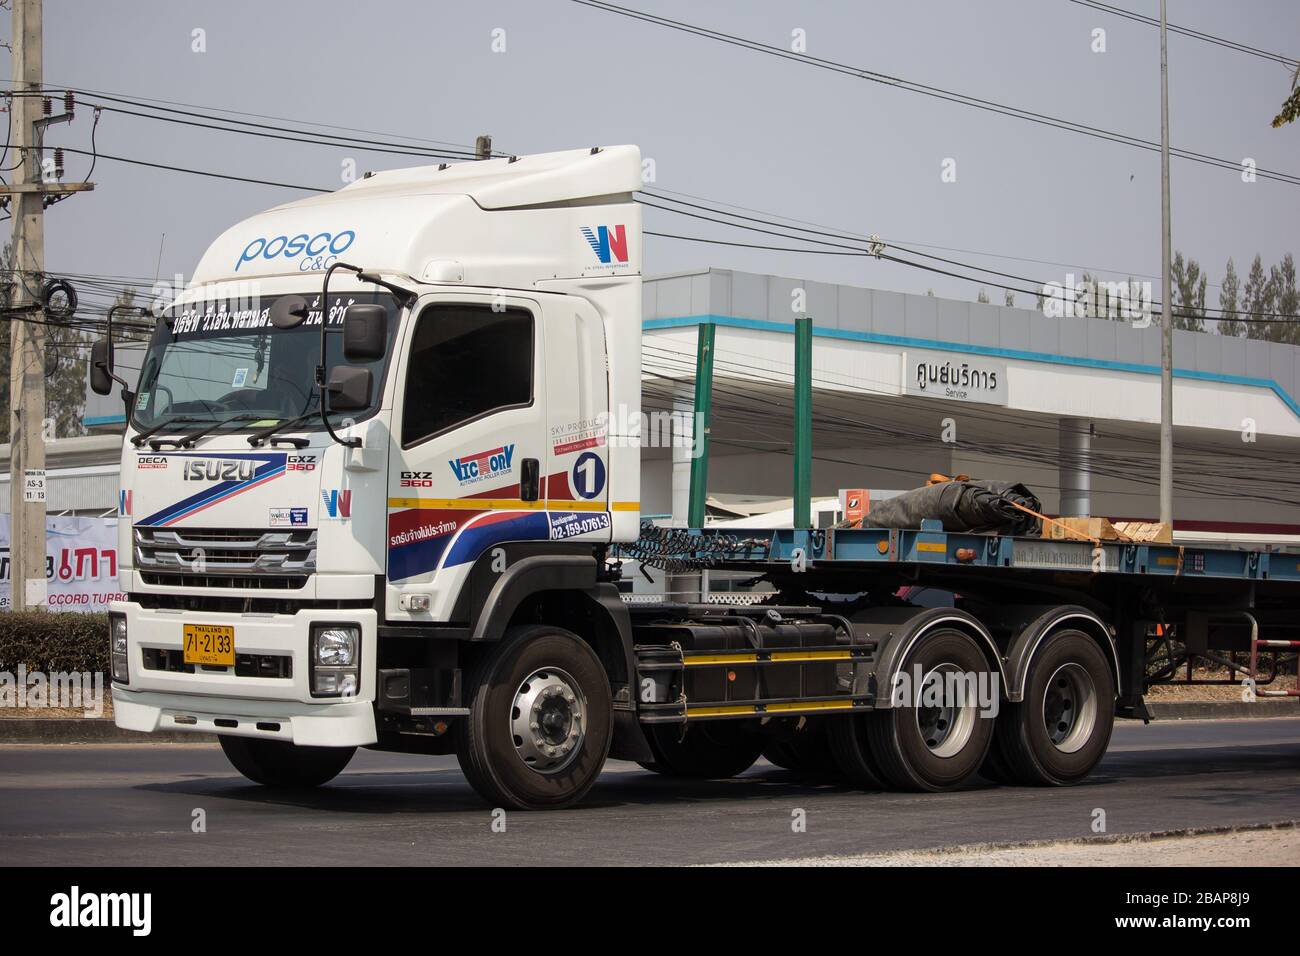 Chiangmai, Thaïlande - 20 février 2020: Camion de cargaison de conteneur de remorque de VN Transport. Photo à la route no.1014 à environ 8 km du centre-ville, thaïlande. Banque D'Images